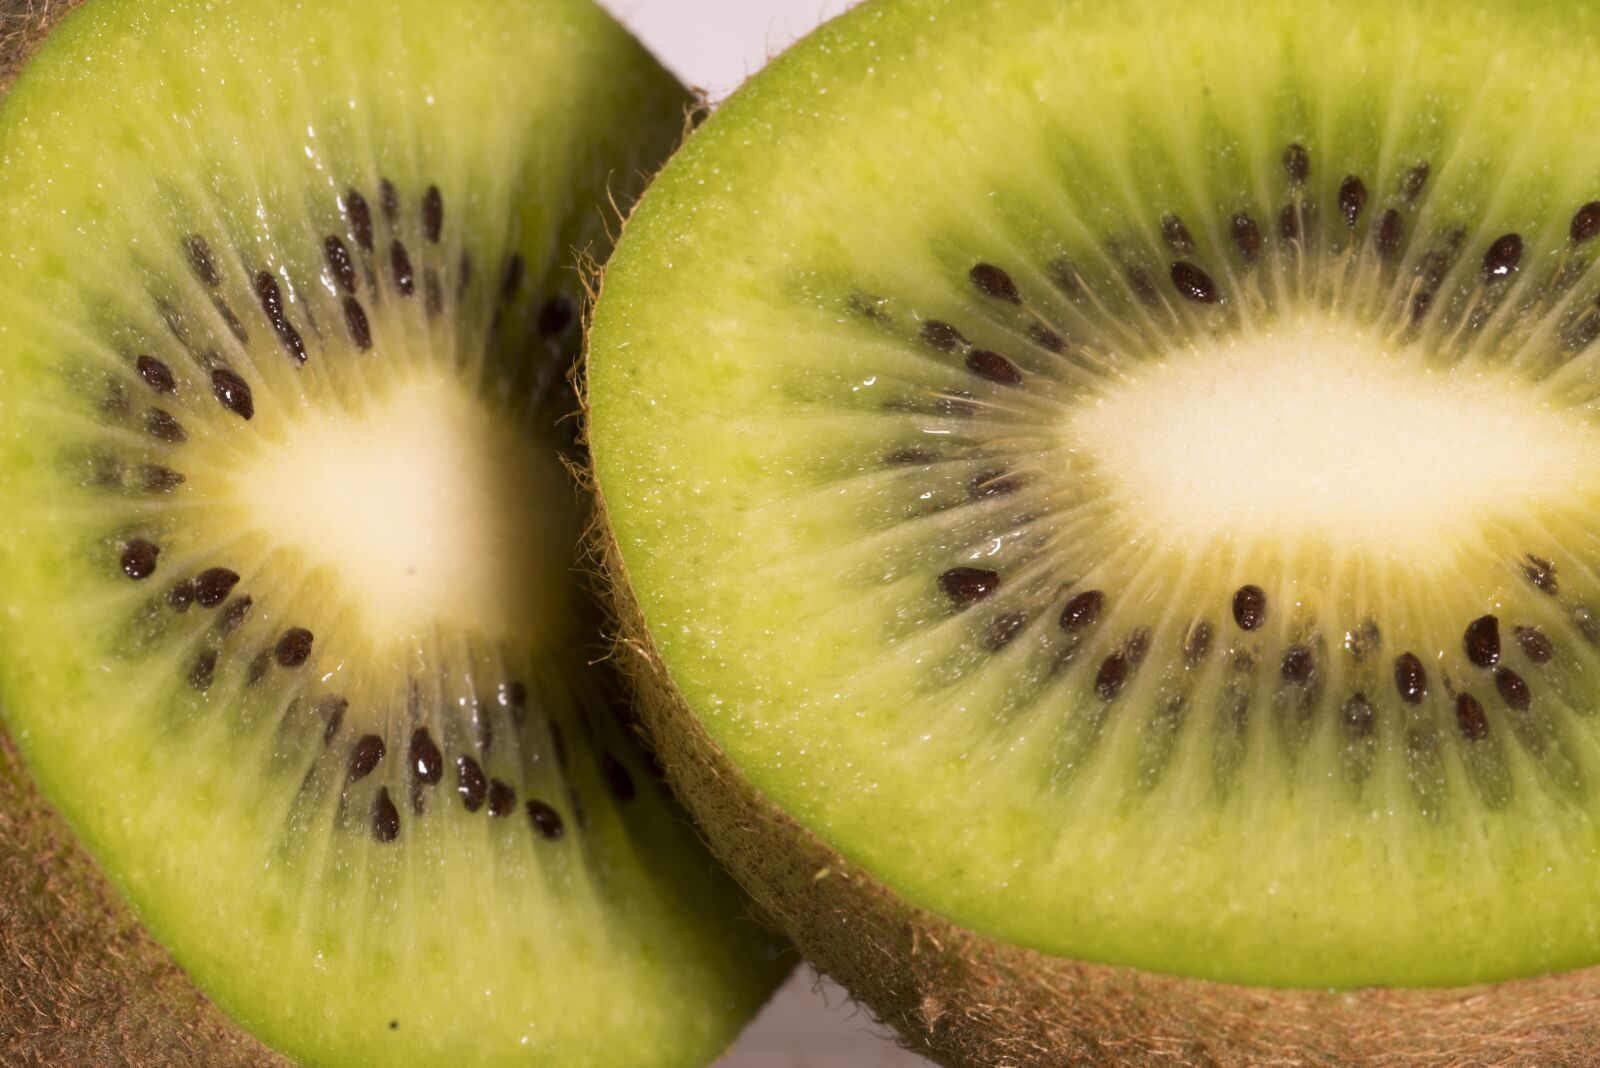 Pentax K-1 sample photo. Kiwi, fruit, fruits photography